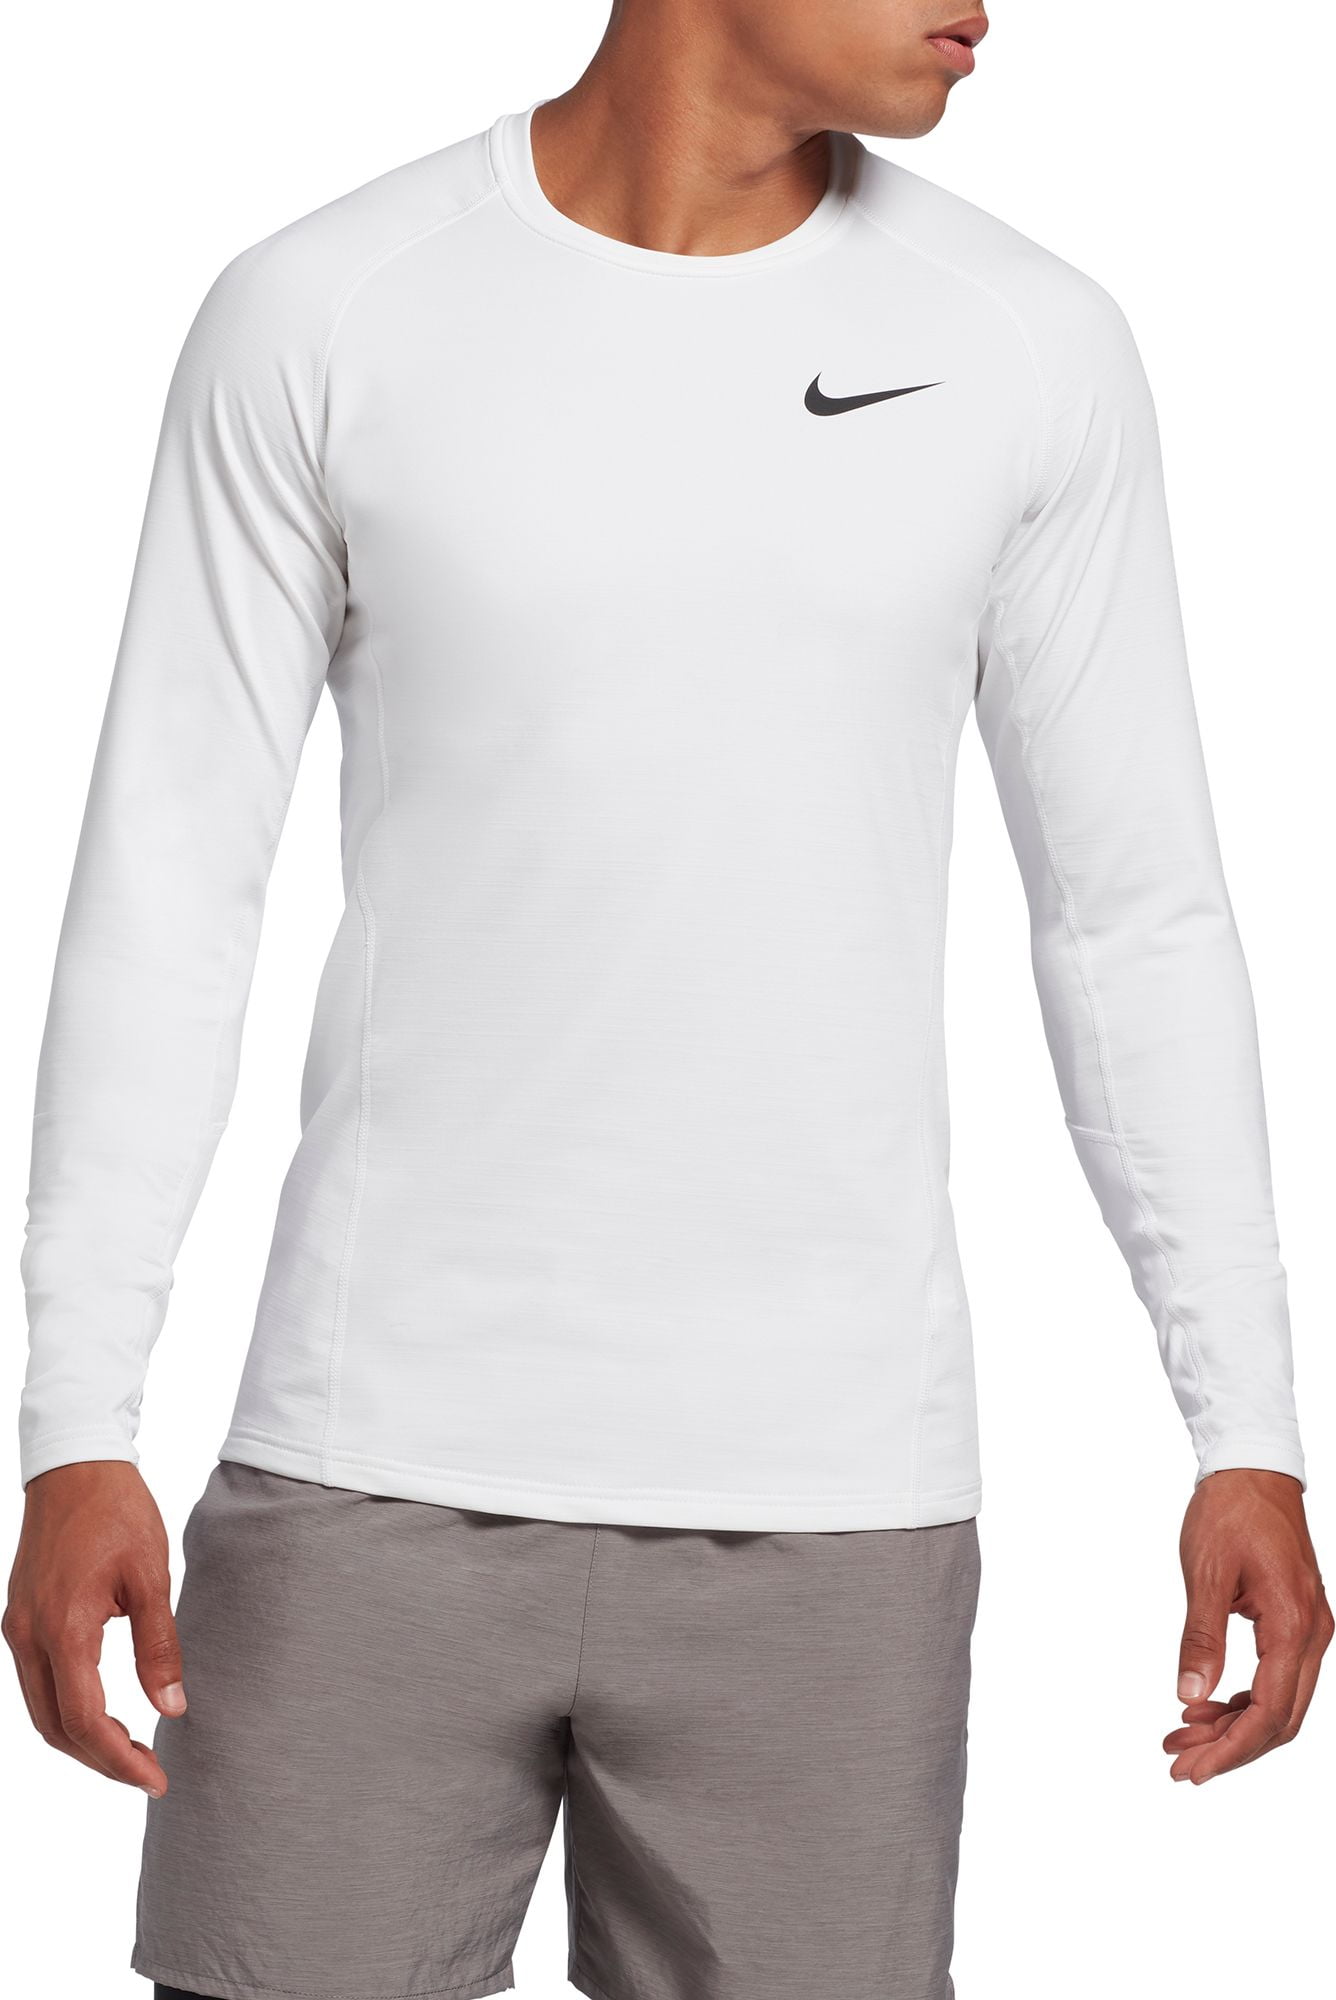 Nike Pro Men's Dri-Fit Slim Fit Short-Sleeve Top, Large, Black